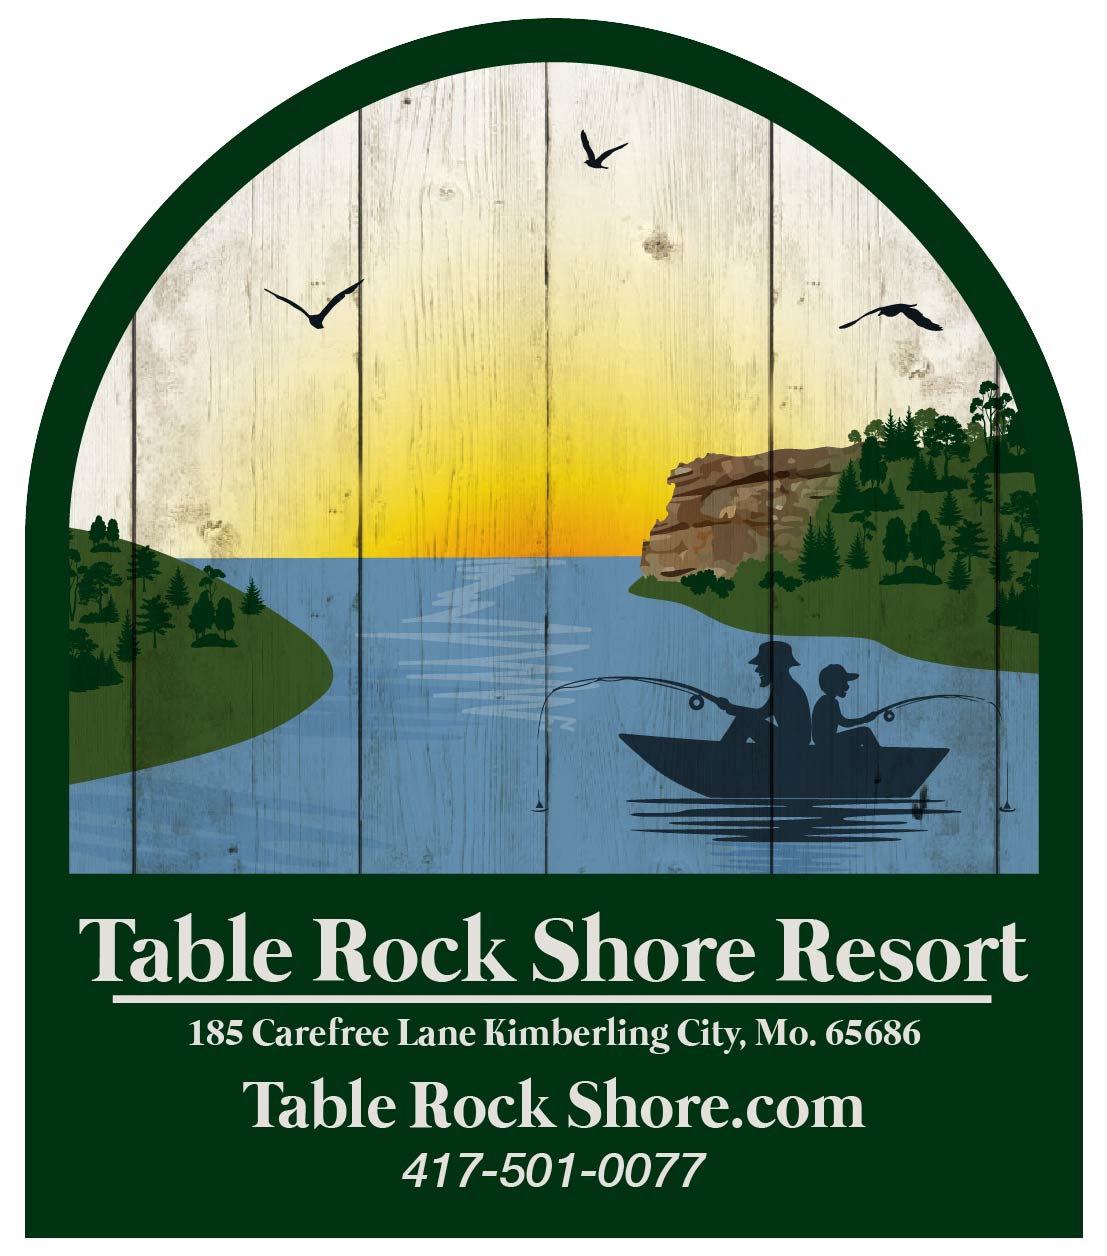 https://growthzonesitesprod.azureedge.net/wp-content/uploads/sites/969/2021/06/Table-Rock-Shore-Resort-2021.jpg